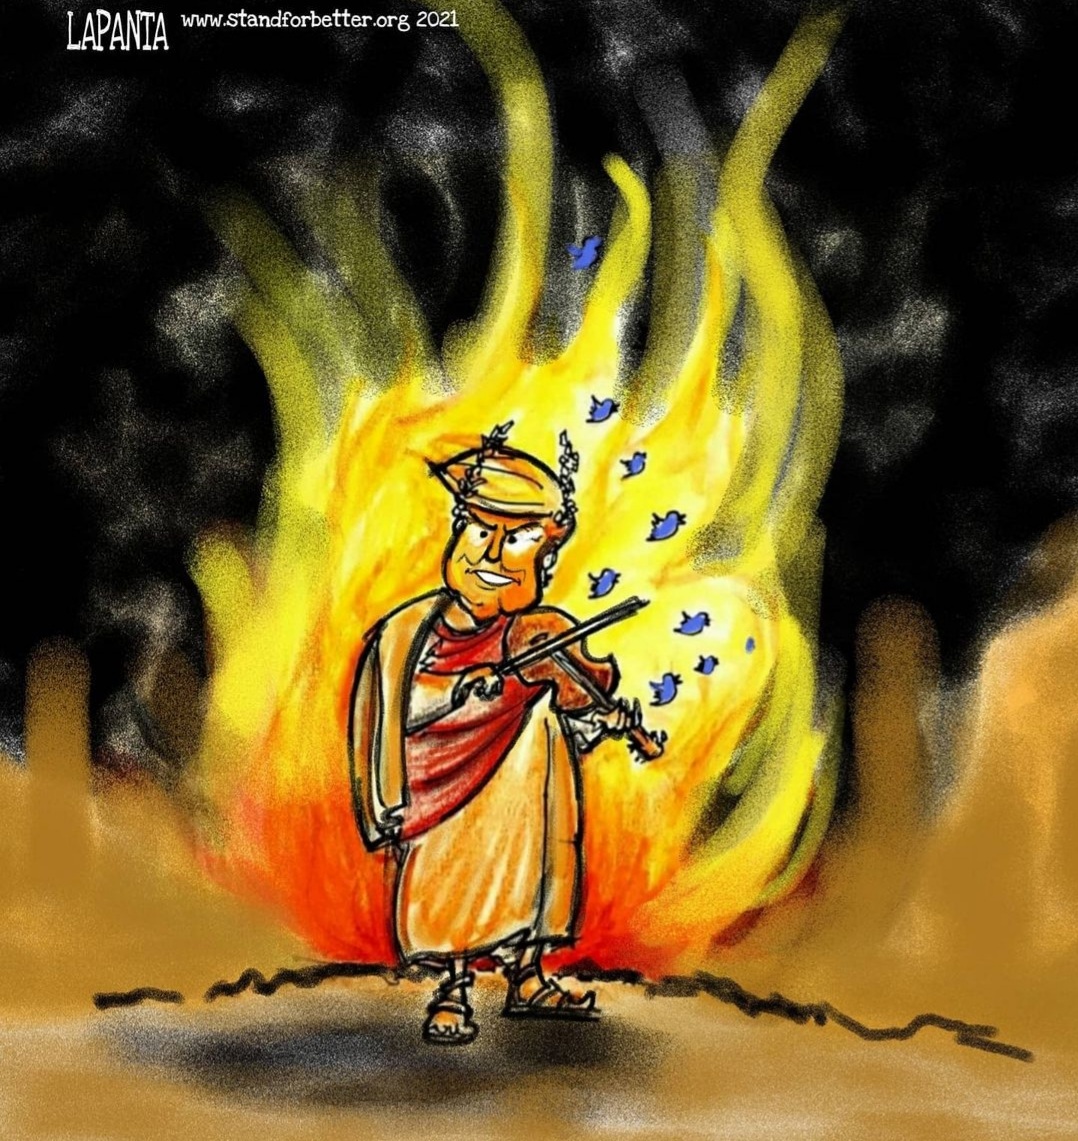 Rome Burns Under Trump